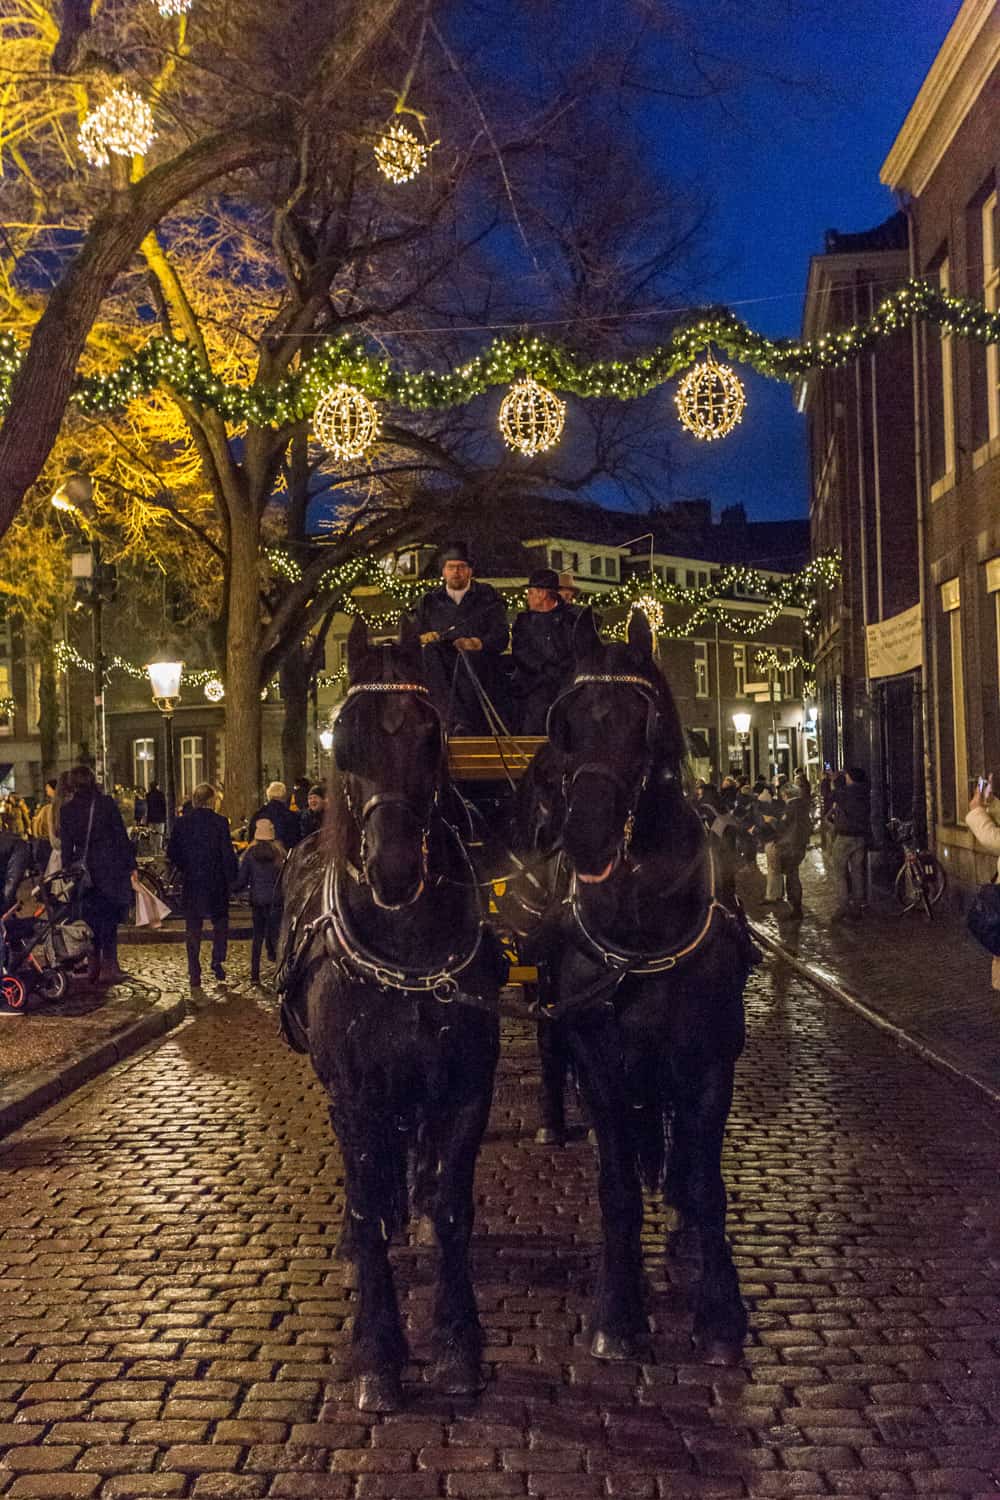 Intocht van de kerstman in Maastricht: wagen met zwarte paarden en kerstverlichting